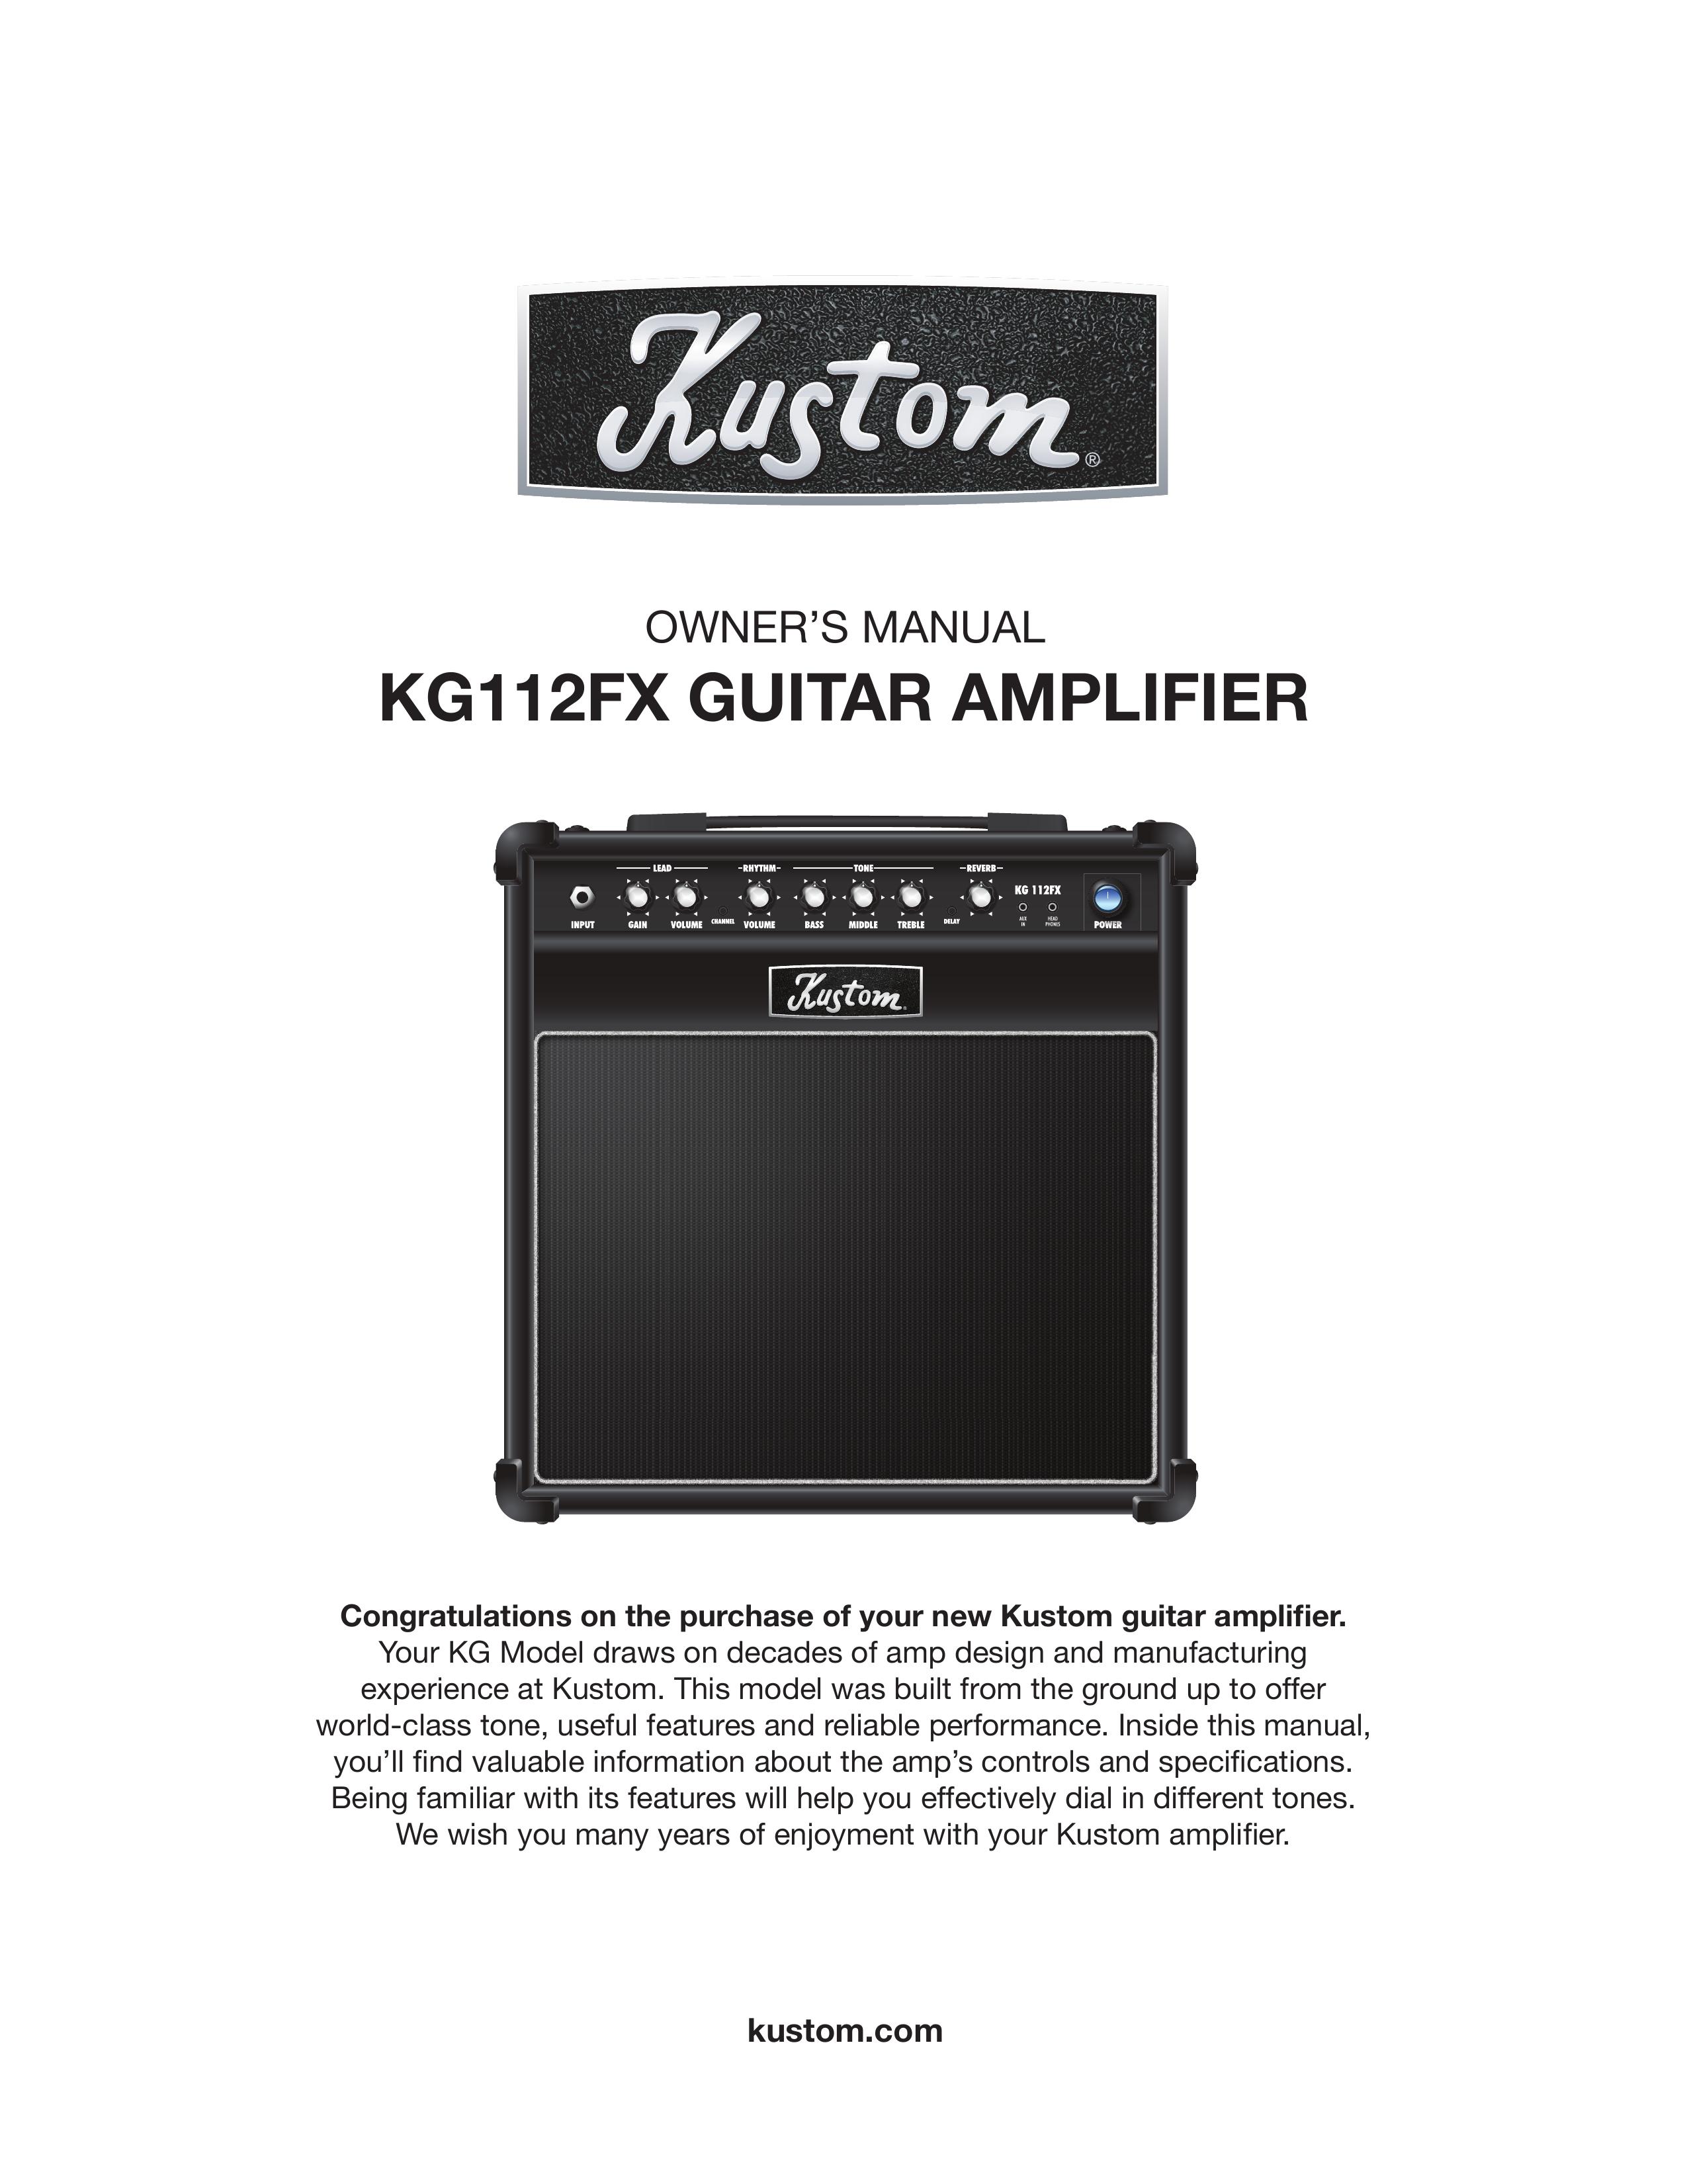 Kustom KG112FX Musical Instrument Amplifier User Manual